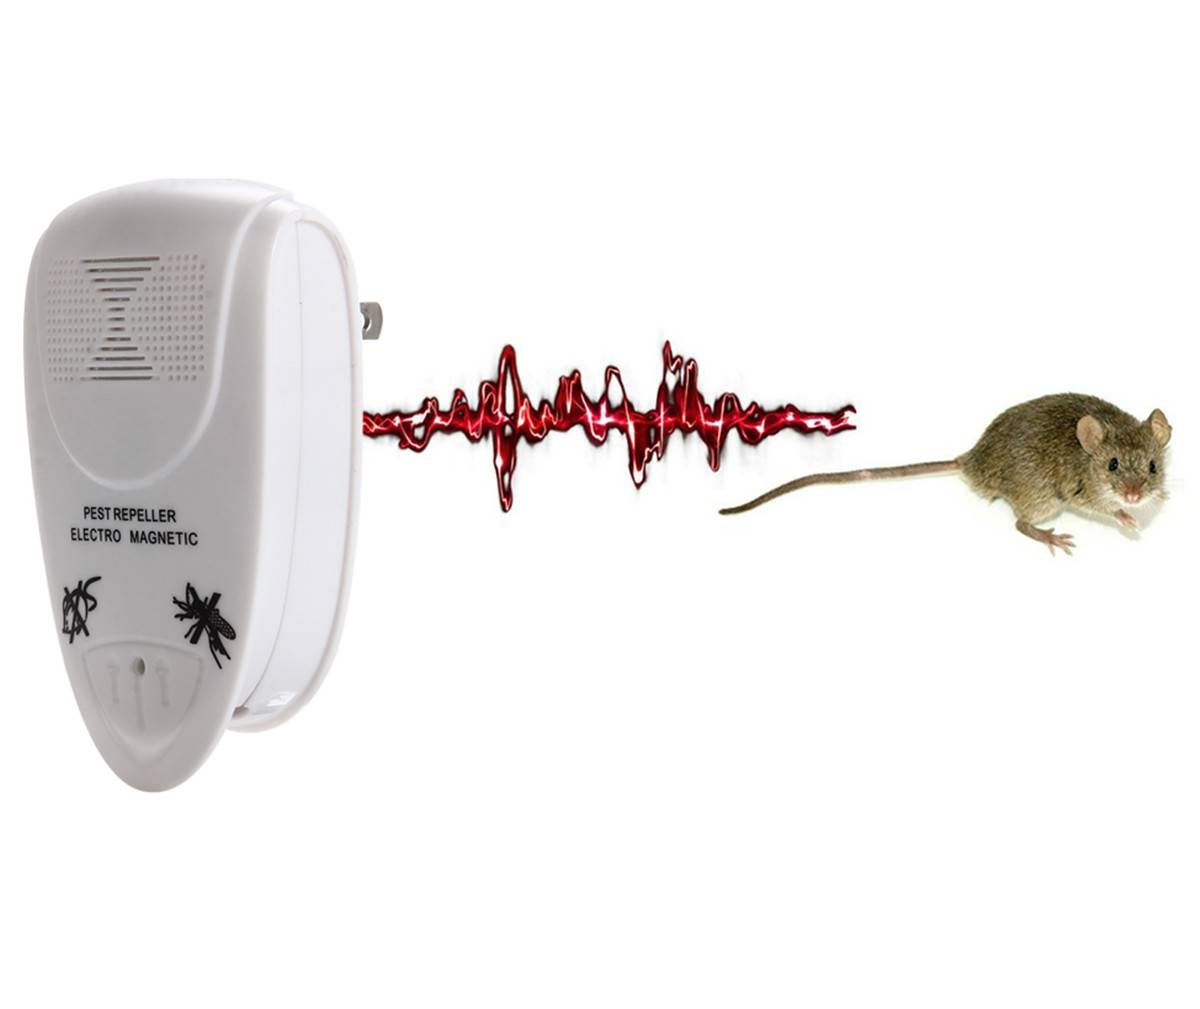 Звуки крыс и мышей слушать